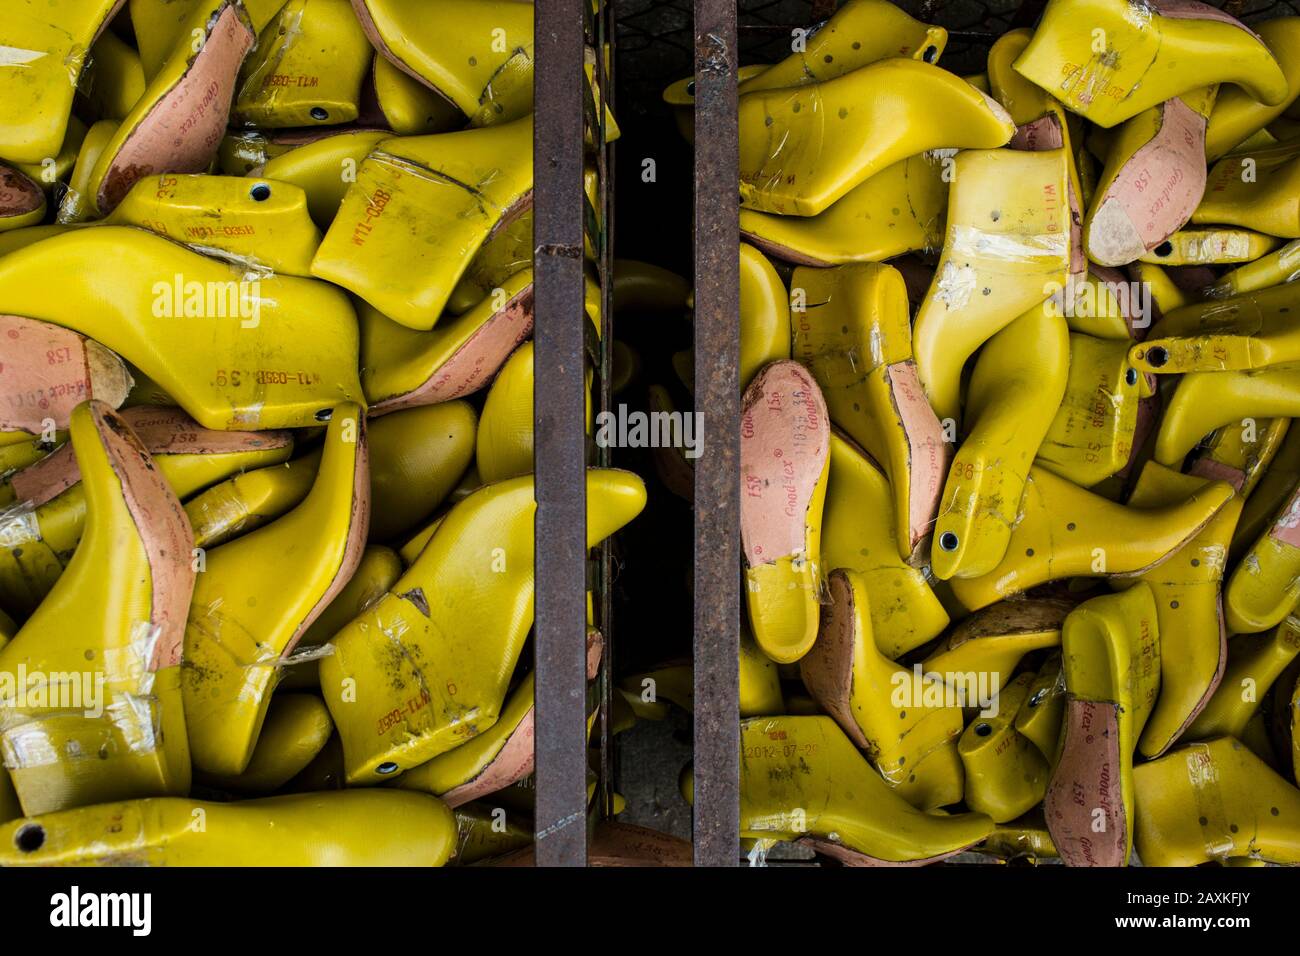 Angolo di chiusura elevato di contenitori di stampi per scarpe gialli in una fabbrica. Foto Stock